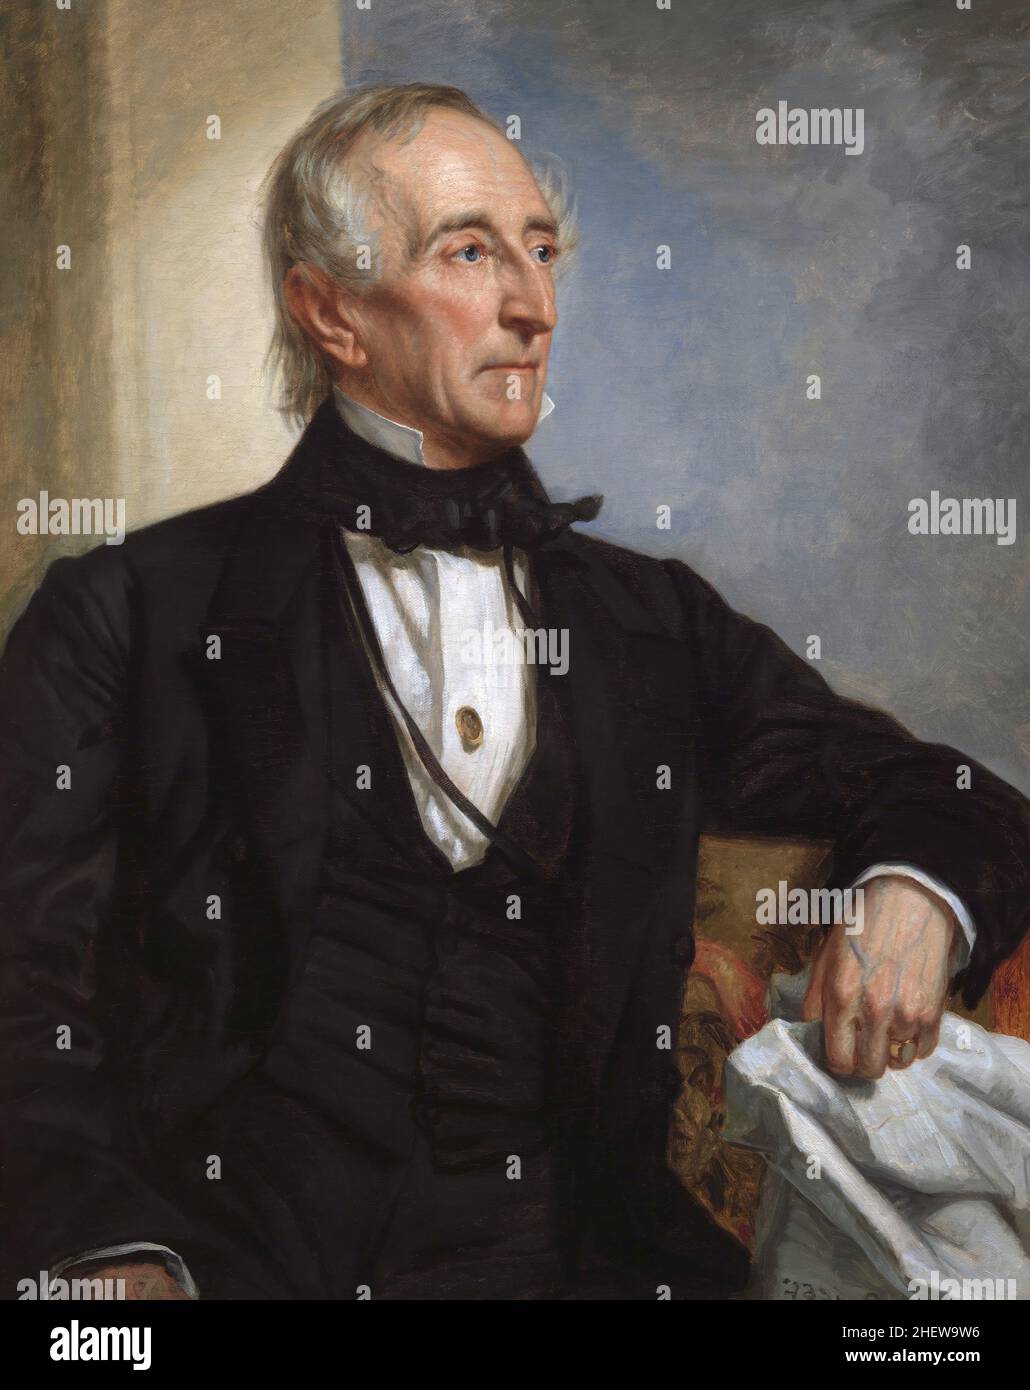 John Tyler (1790-1862), 10th Président des États-Unis 1841-1845, demi-longueur Portrait, peinture, huile sur toile, George Peter Alexander Healy, 1859 Banque D'Images